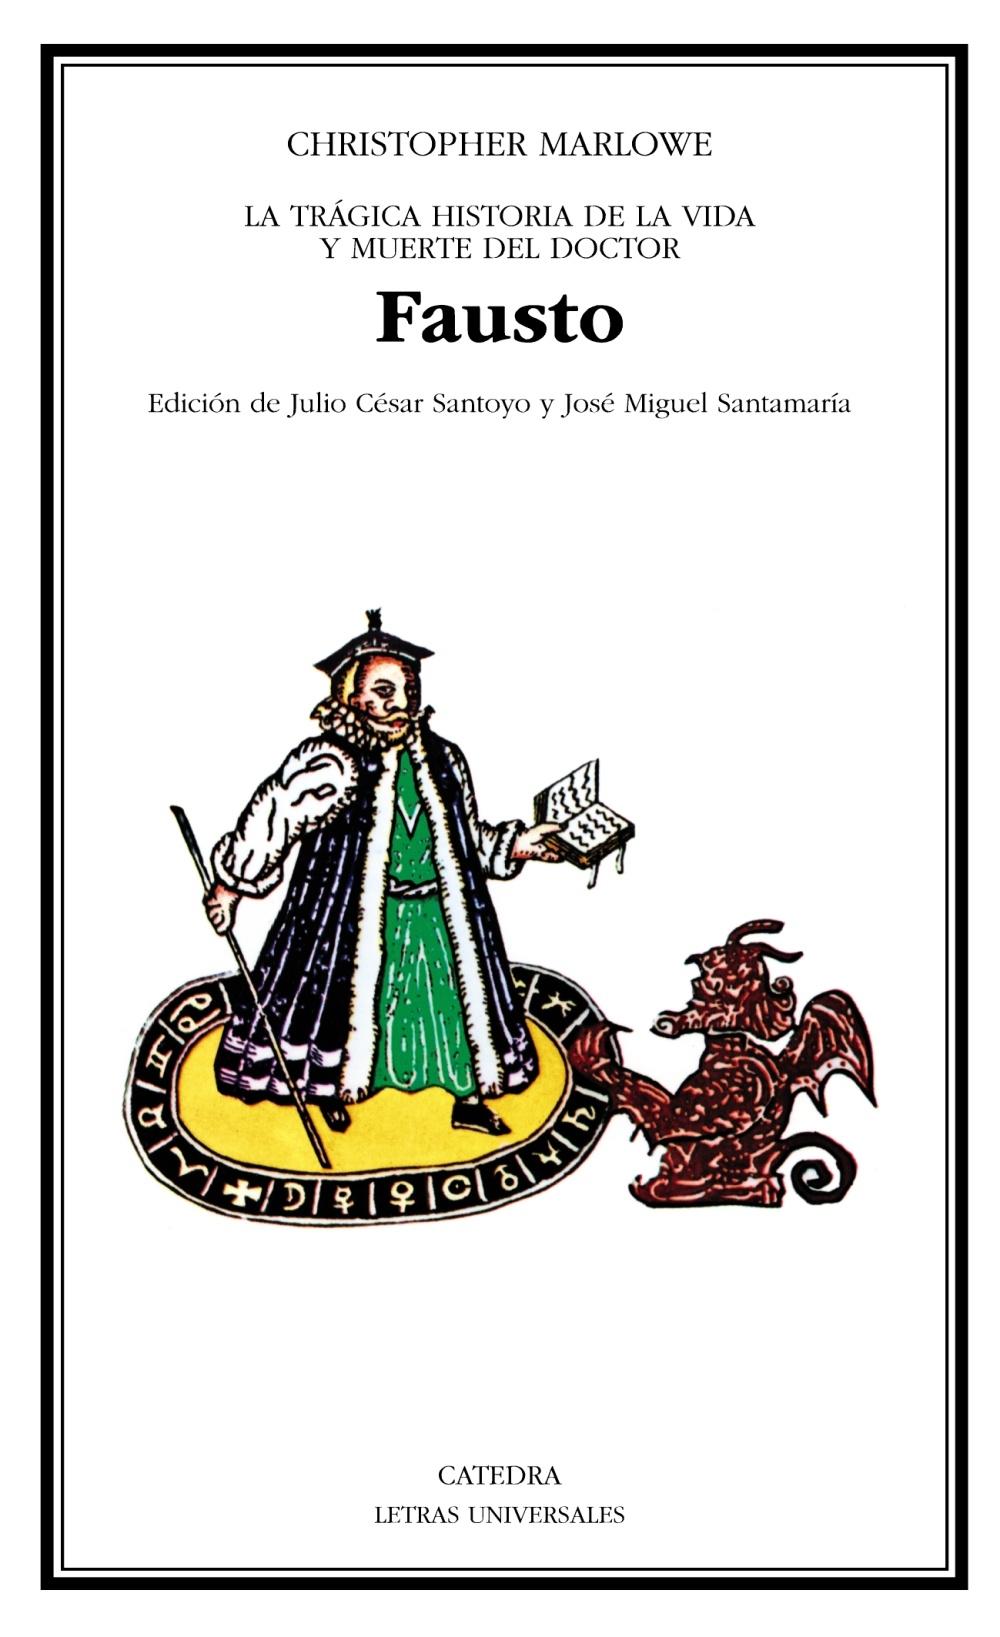 Fausto "La trágica historia de la vida y muerte del doctor Fausto". 